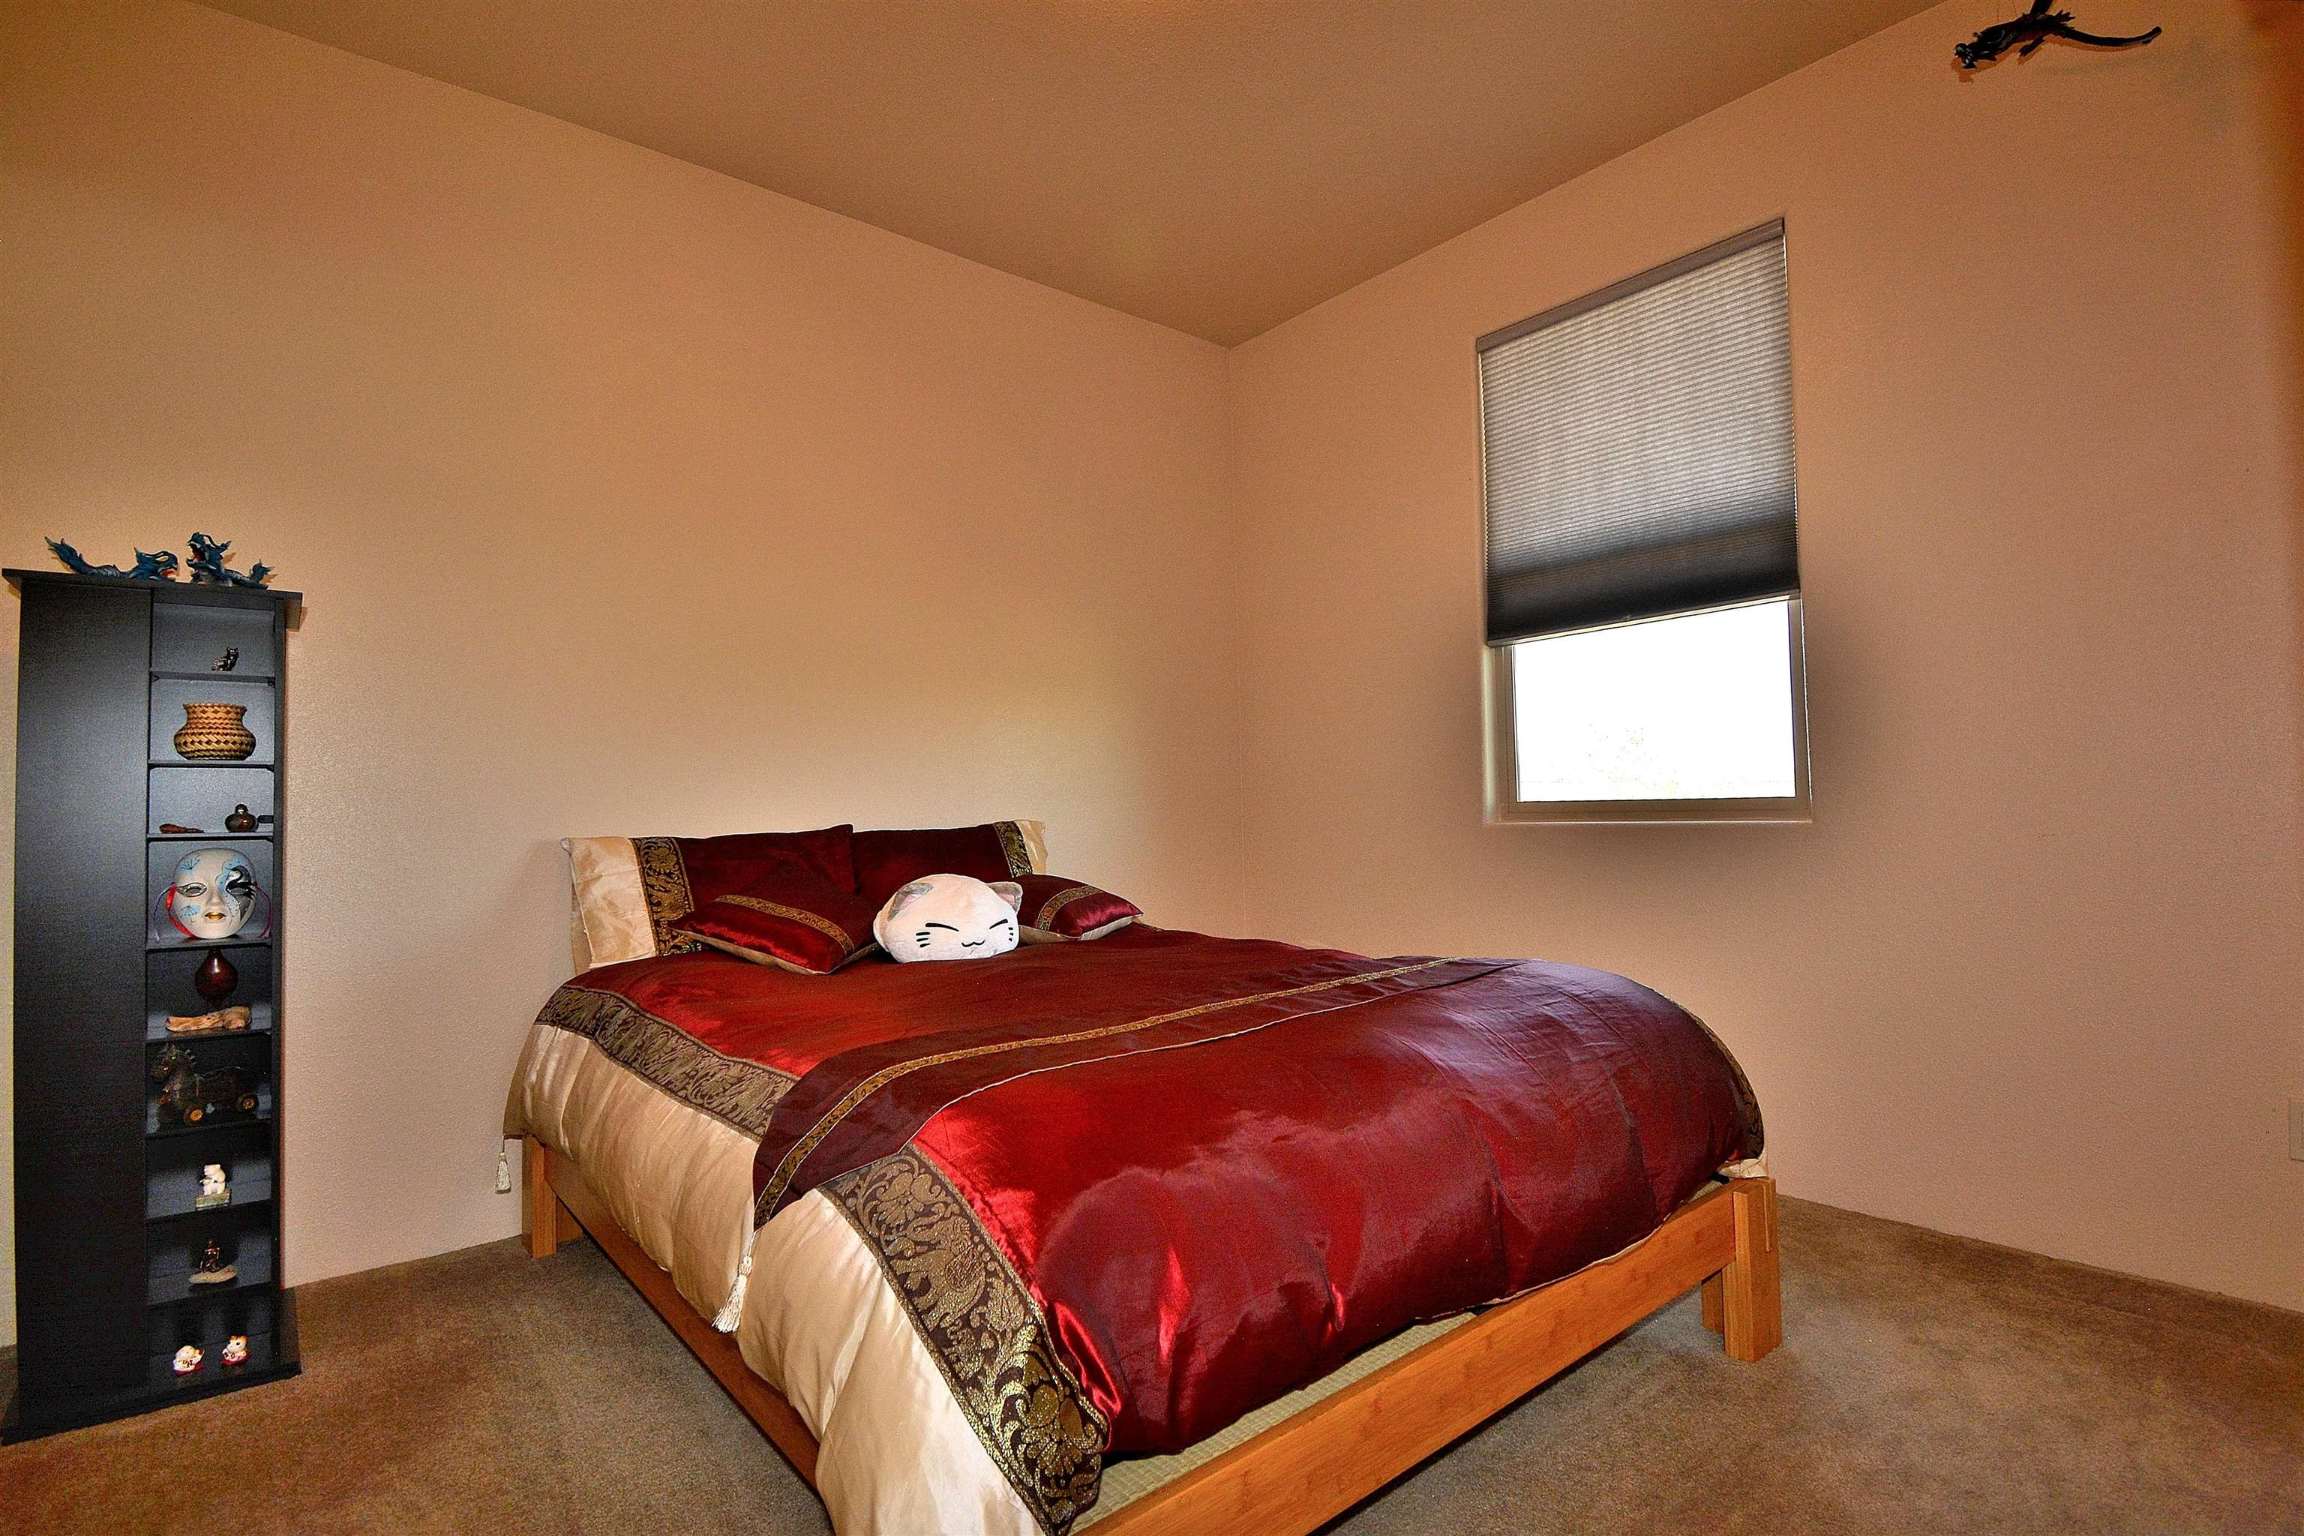 5301 Joshua, Santa Fe, New Mexico 87507, 3 Bedrooms Bedrooms, ,3 BathroomsBathrooms,Residential,For Sale,5301 Joshua,202201490